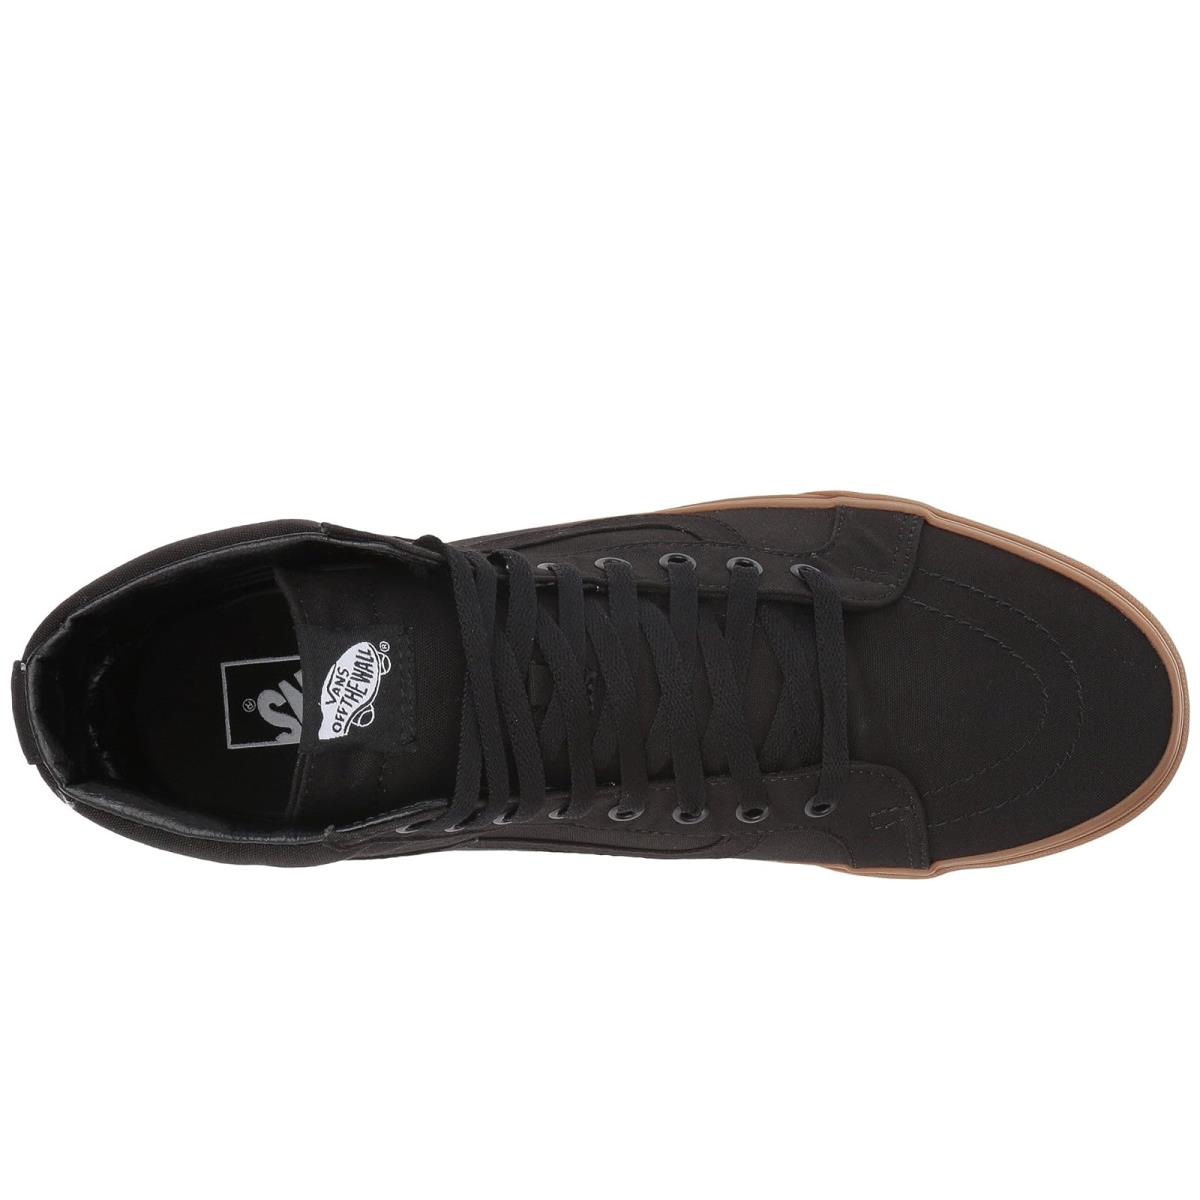 Unisex Sneakers Athletic Shoes Vans SK8-Hi Reissue (Canvas Gum) Black/Light Gum